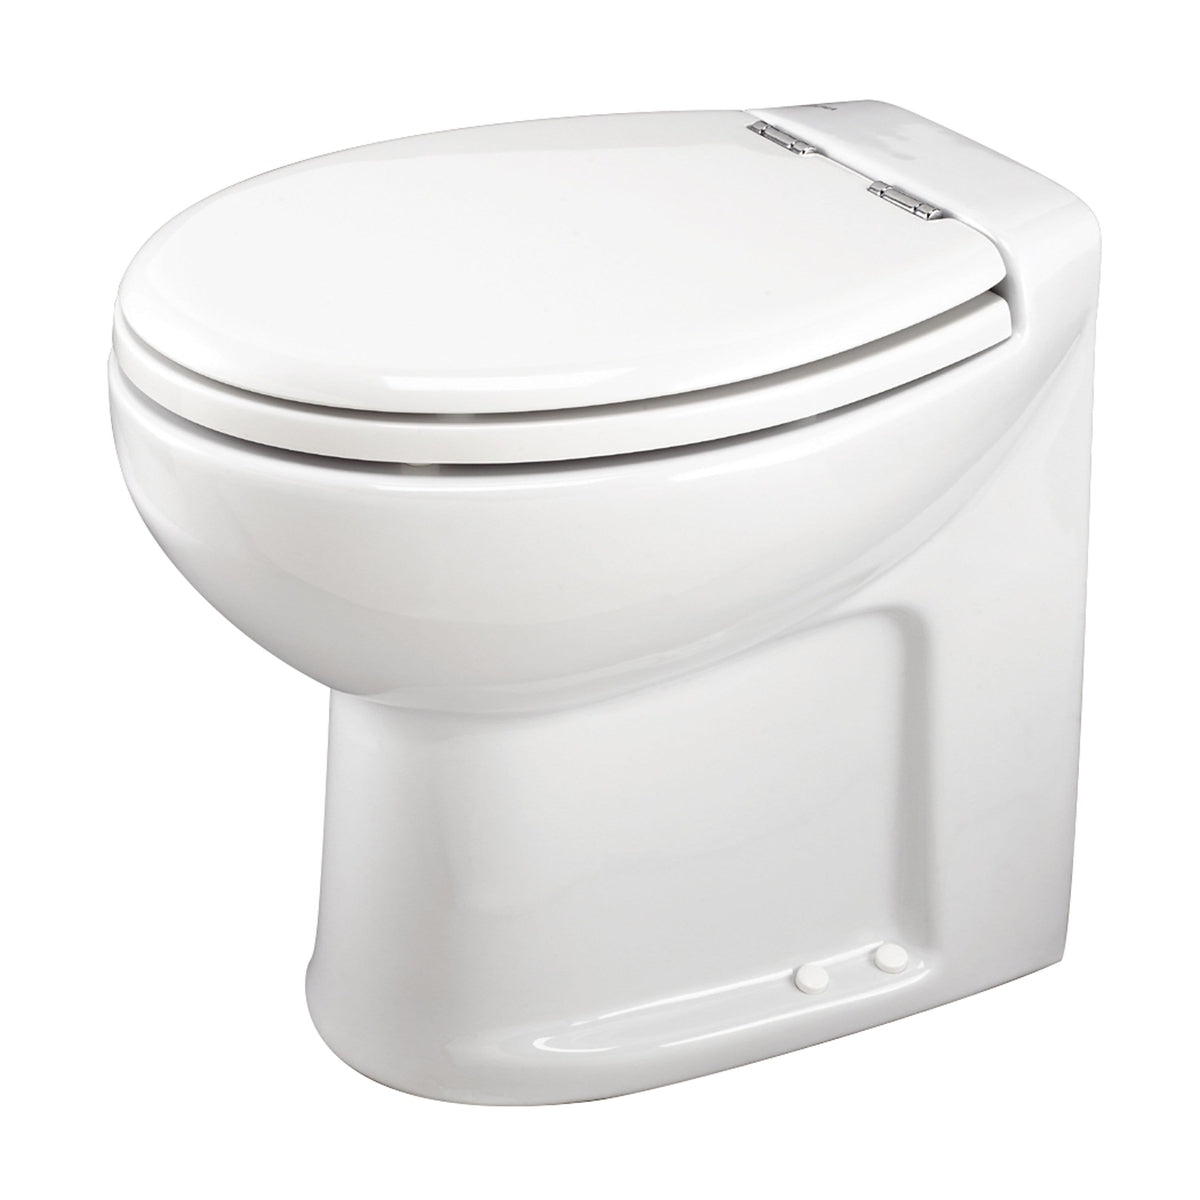 Thetford Not Qualified for Free Shipping Thetford Tecma Silence Plus 1 Mode 24v RV Toilet White #38034